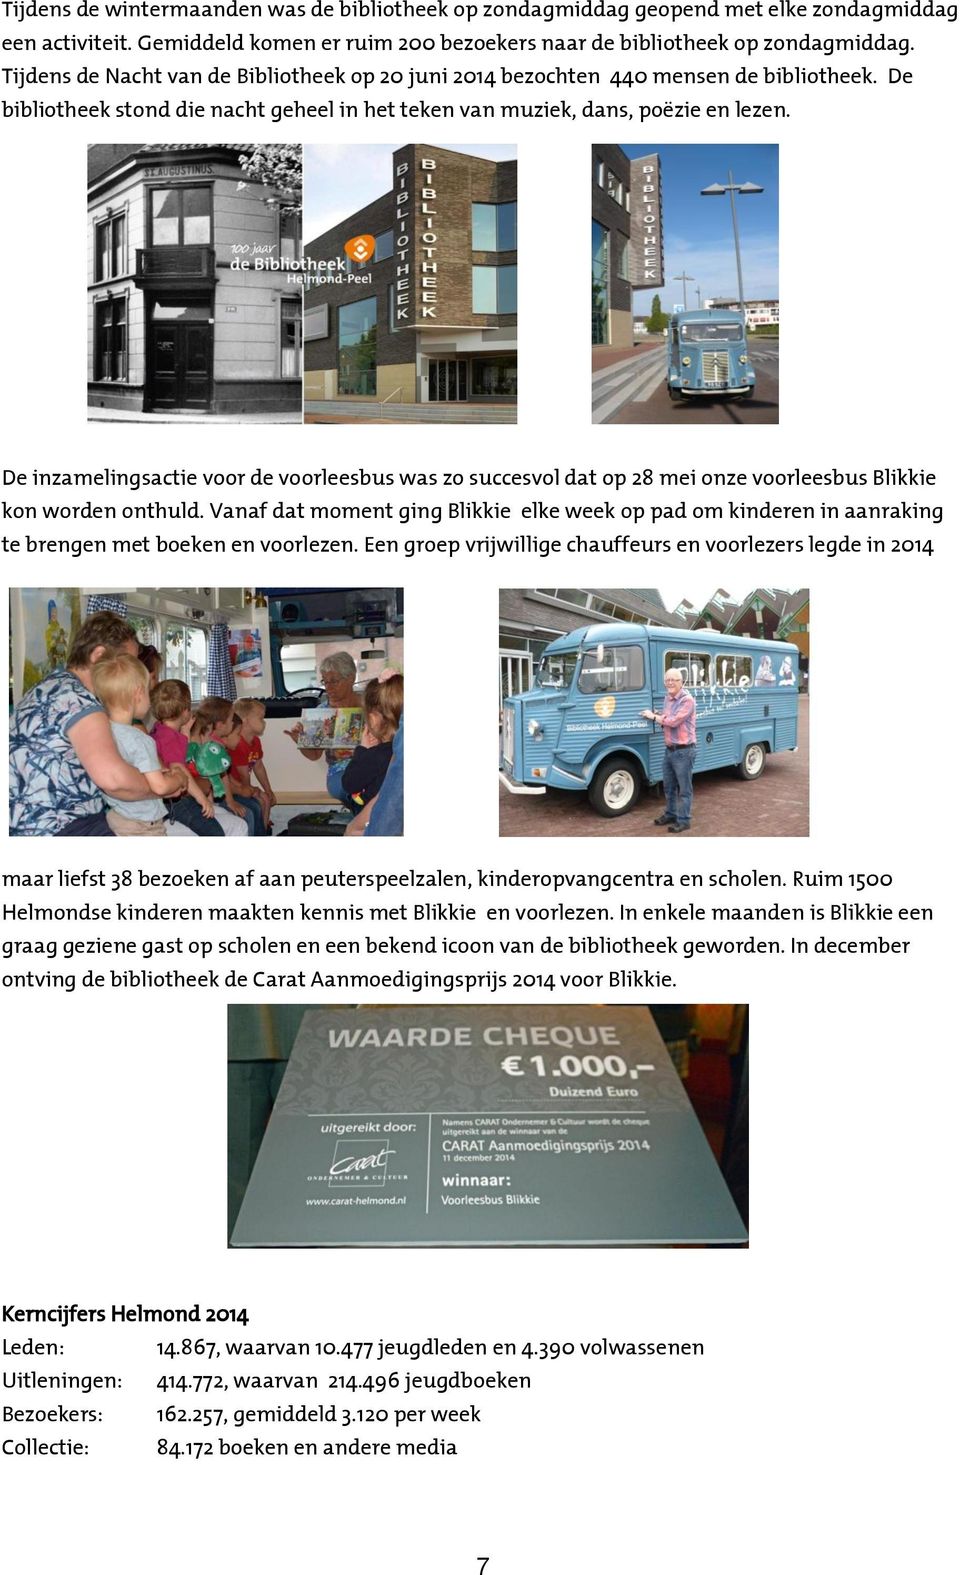 De inzamelingsactie voor de voorleesbus was zo succesvol dat op 28 mei onze voorleesbus Blikkie kon worden onthuld.